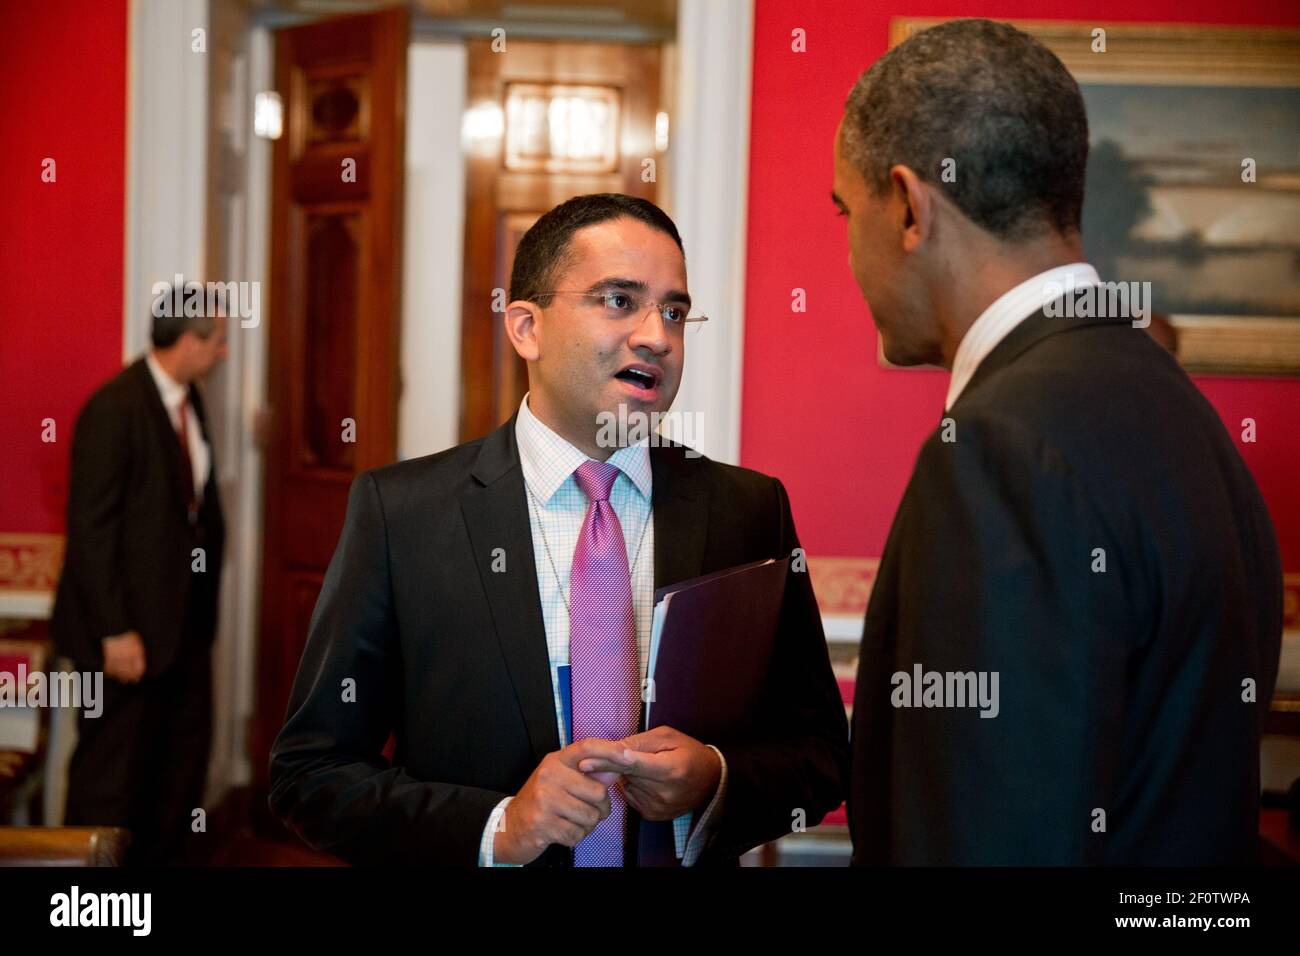 President Barack Obama talks with Gautam Raghavan in the Red Room of the White House June 13 2013. Stock Photo